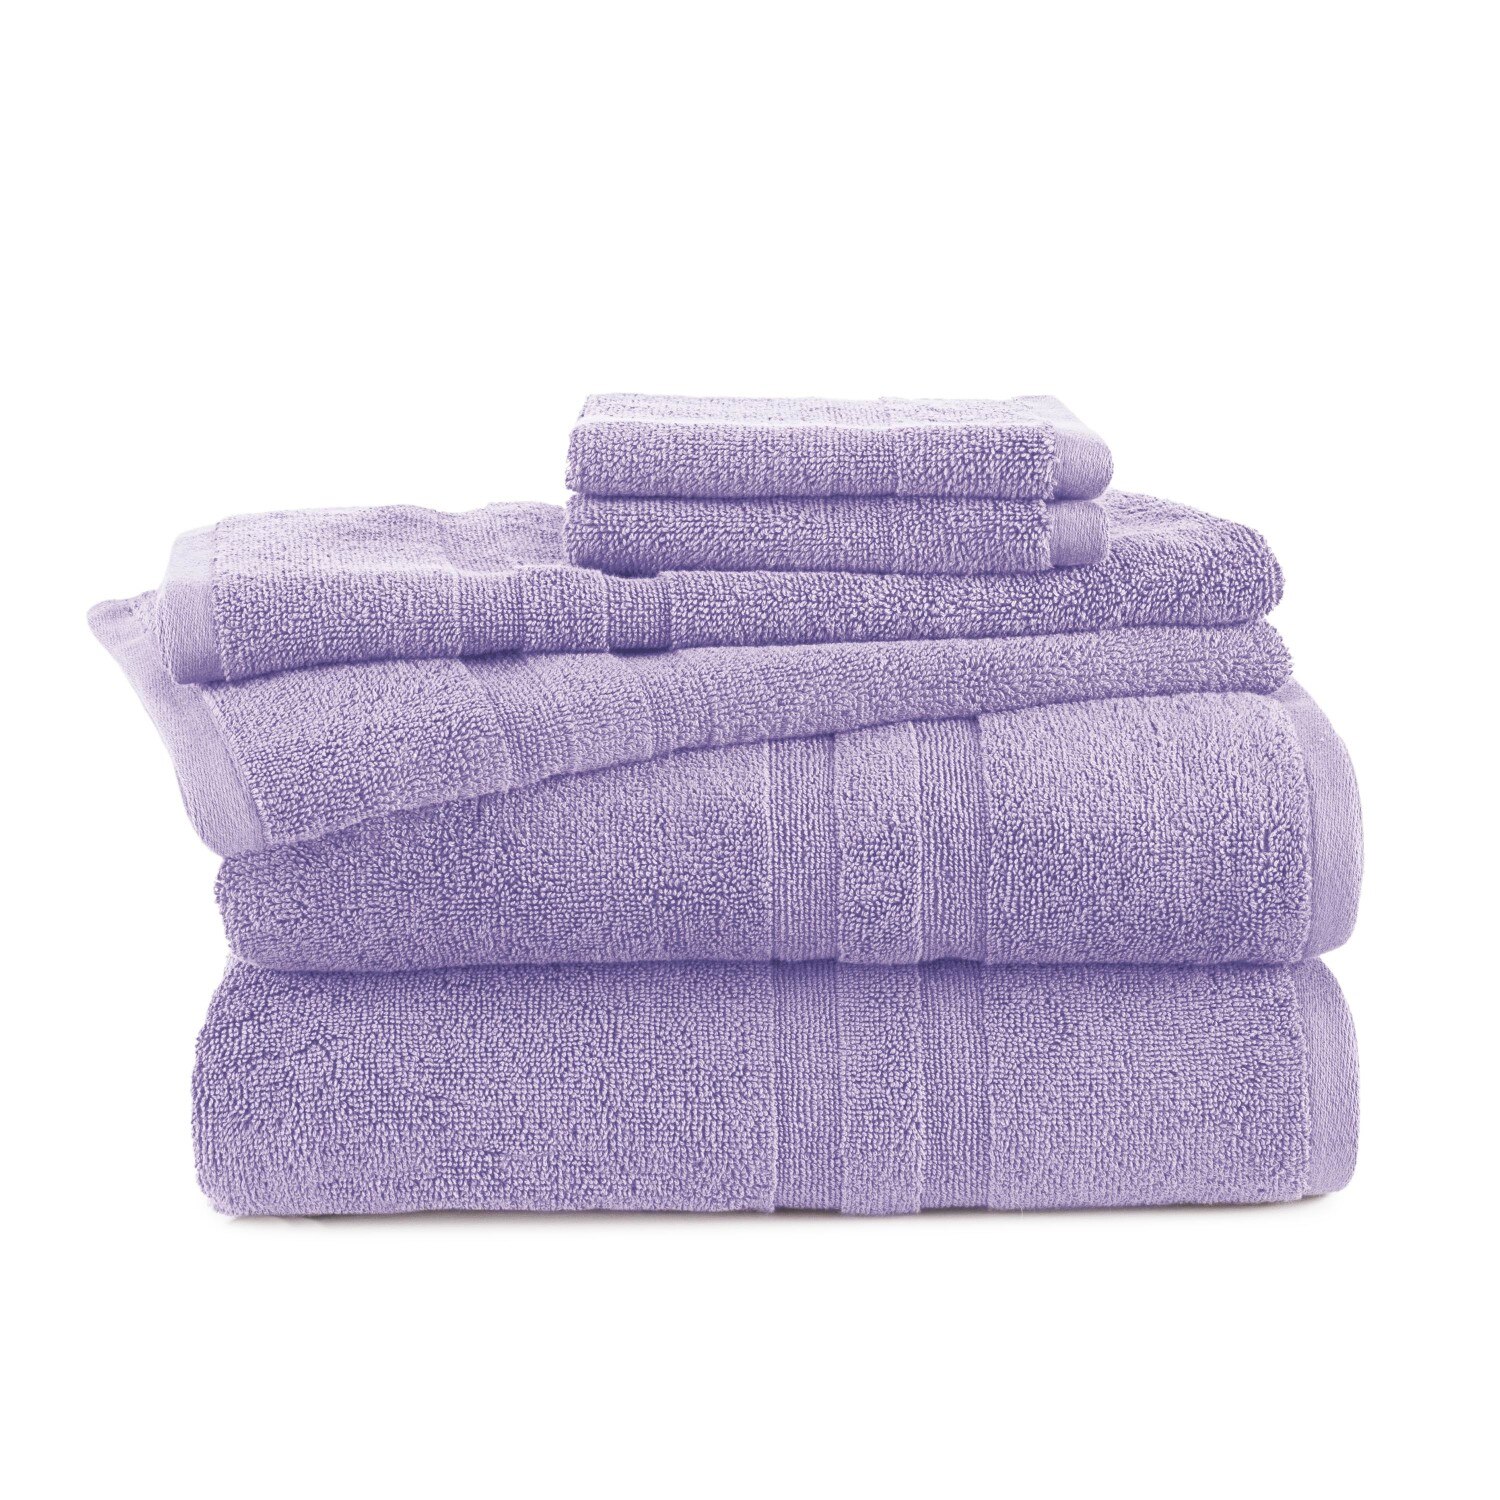 Martex Purity Solid 6-Piece Towel Set